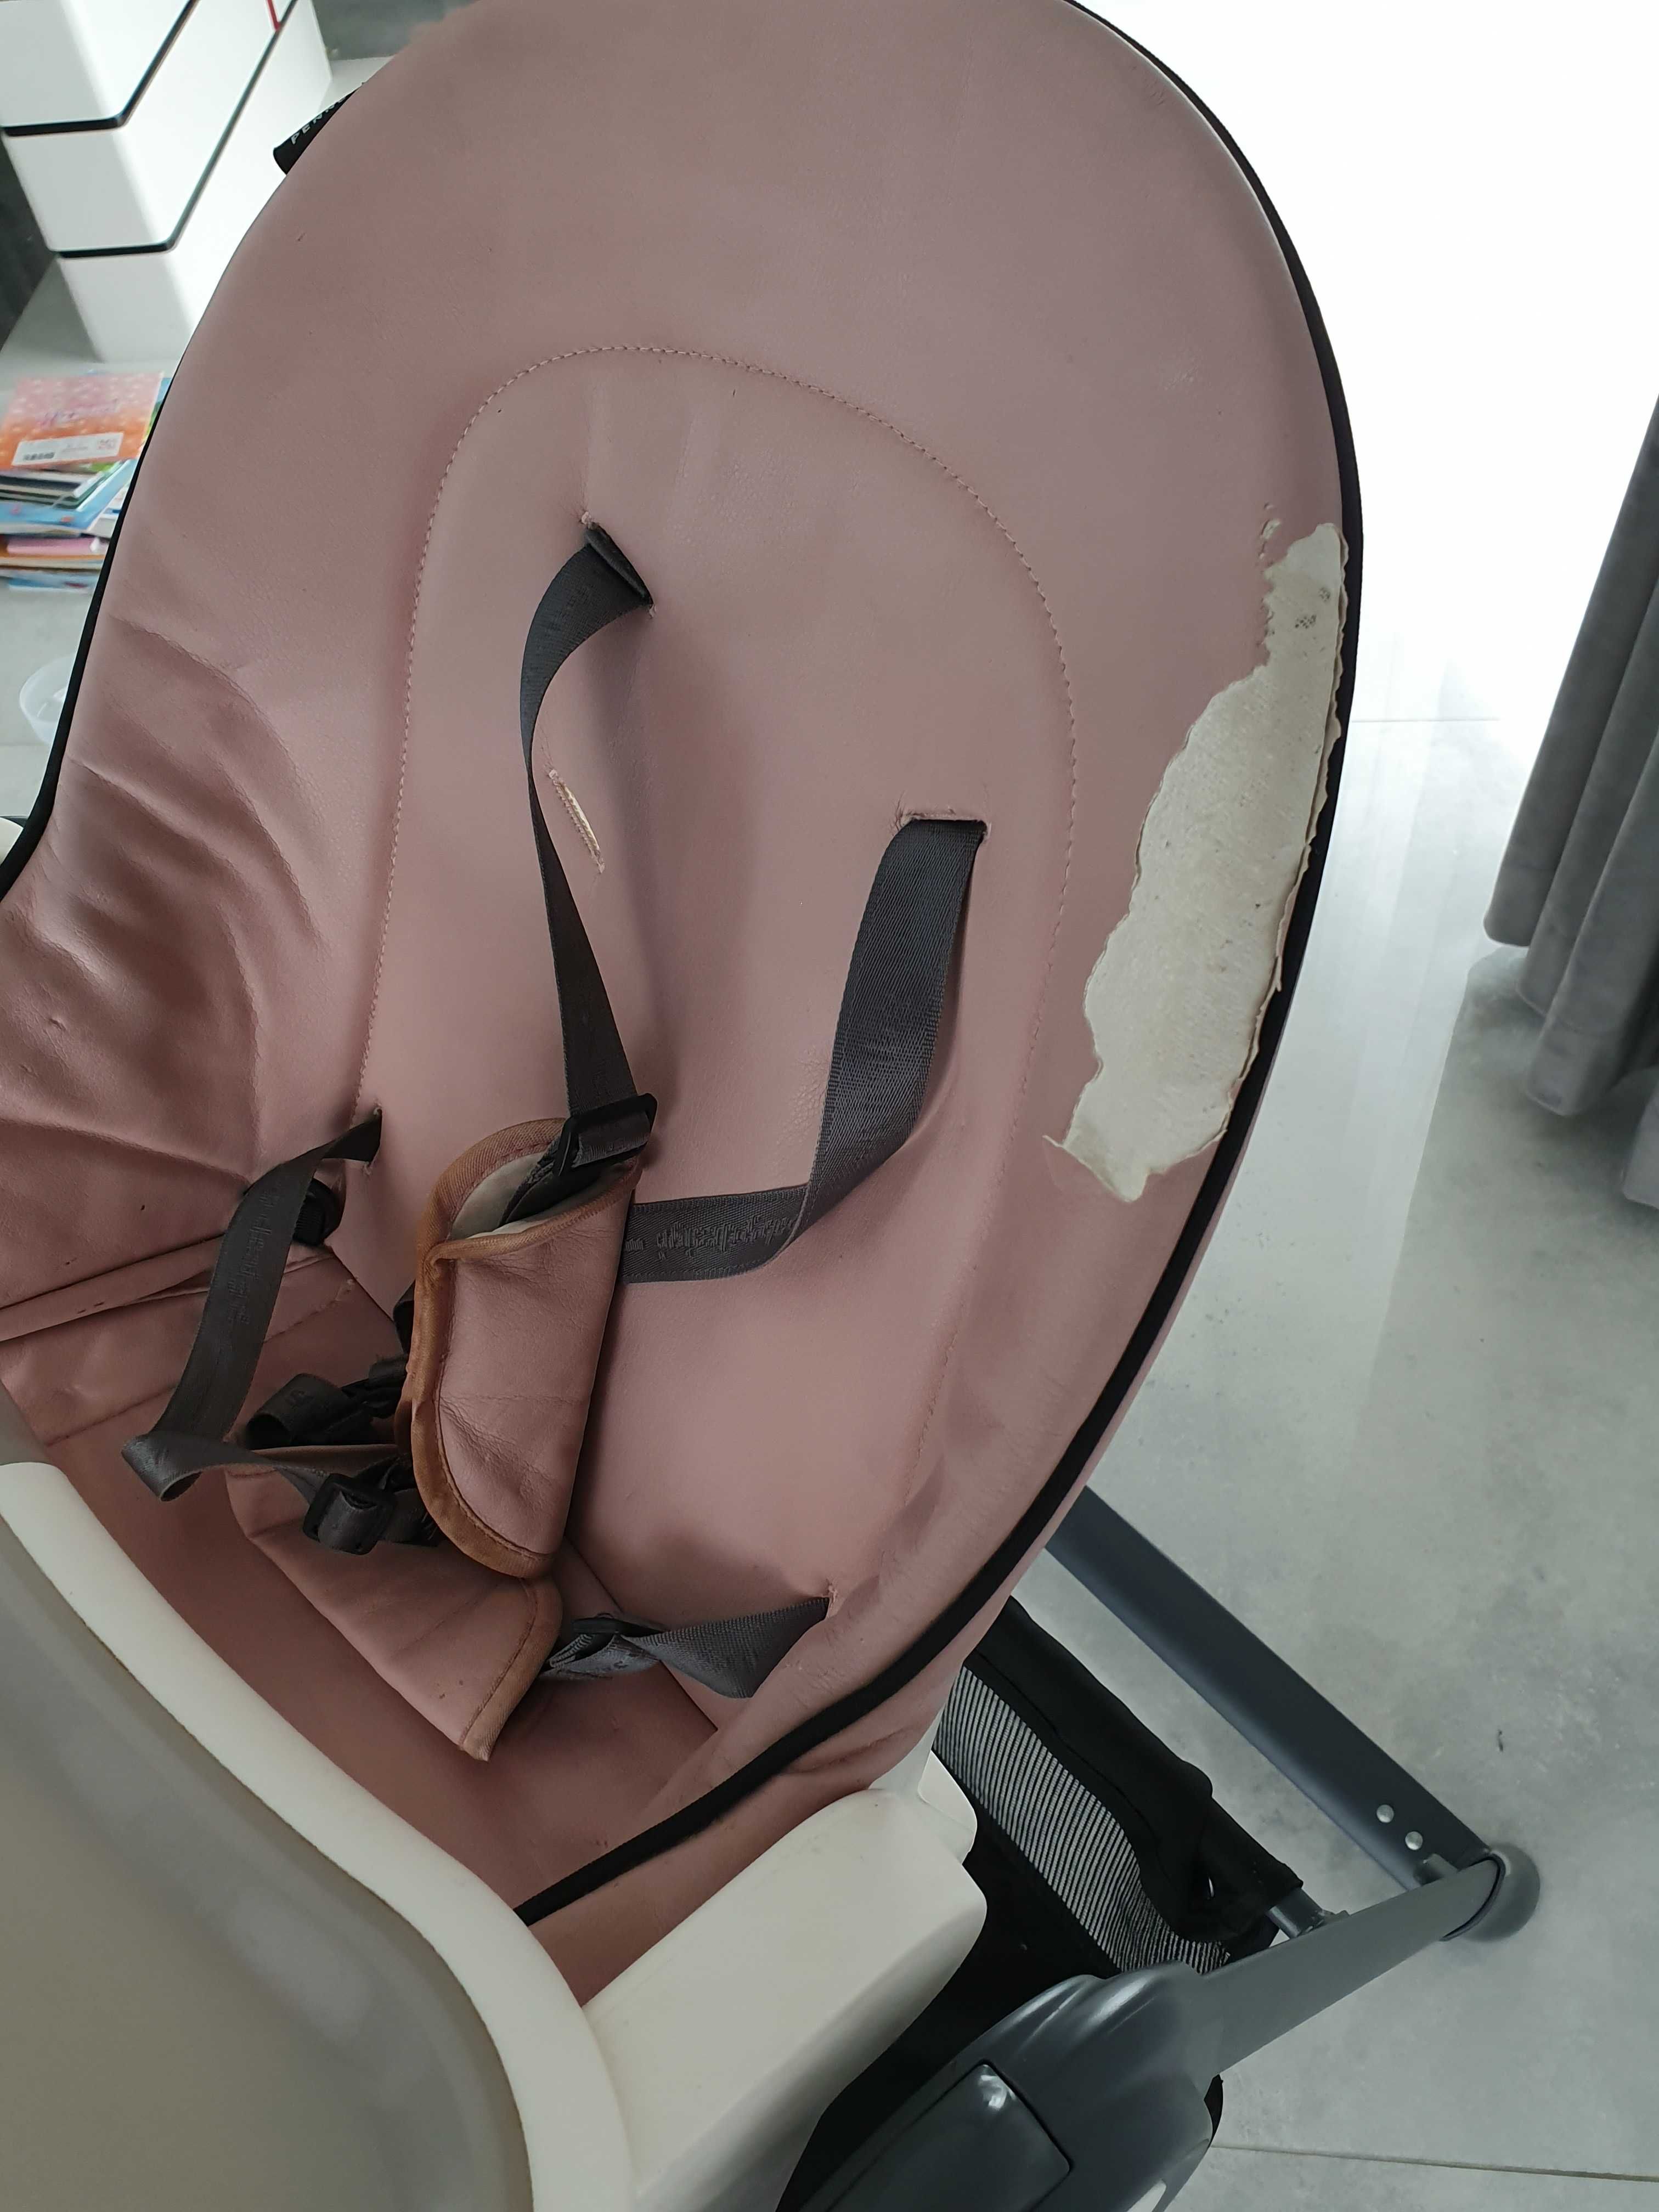 Krzesło do karmienia baby design